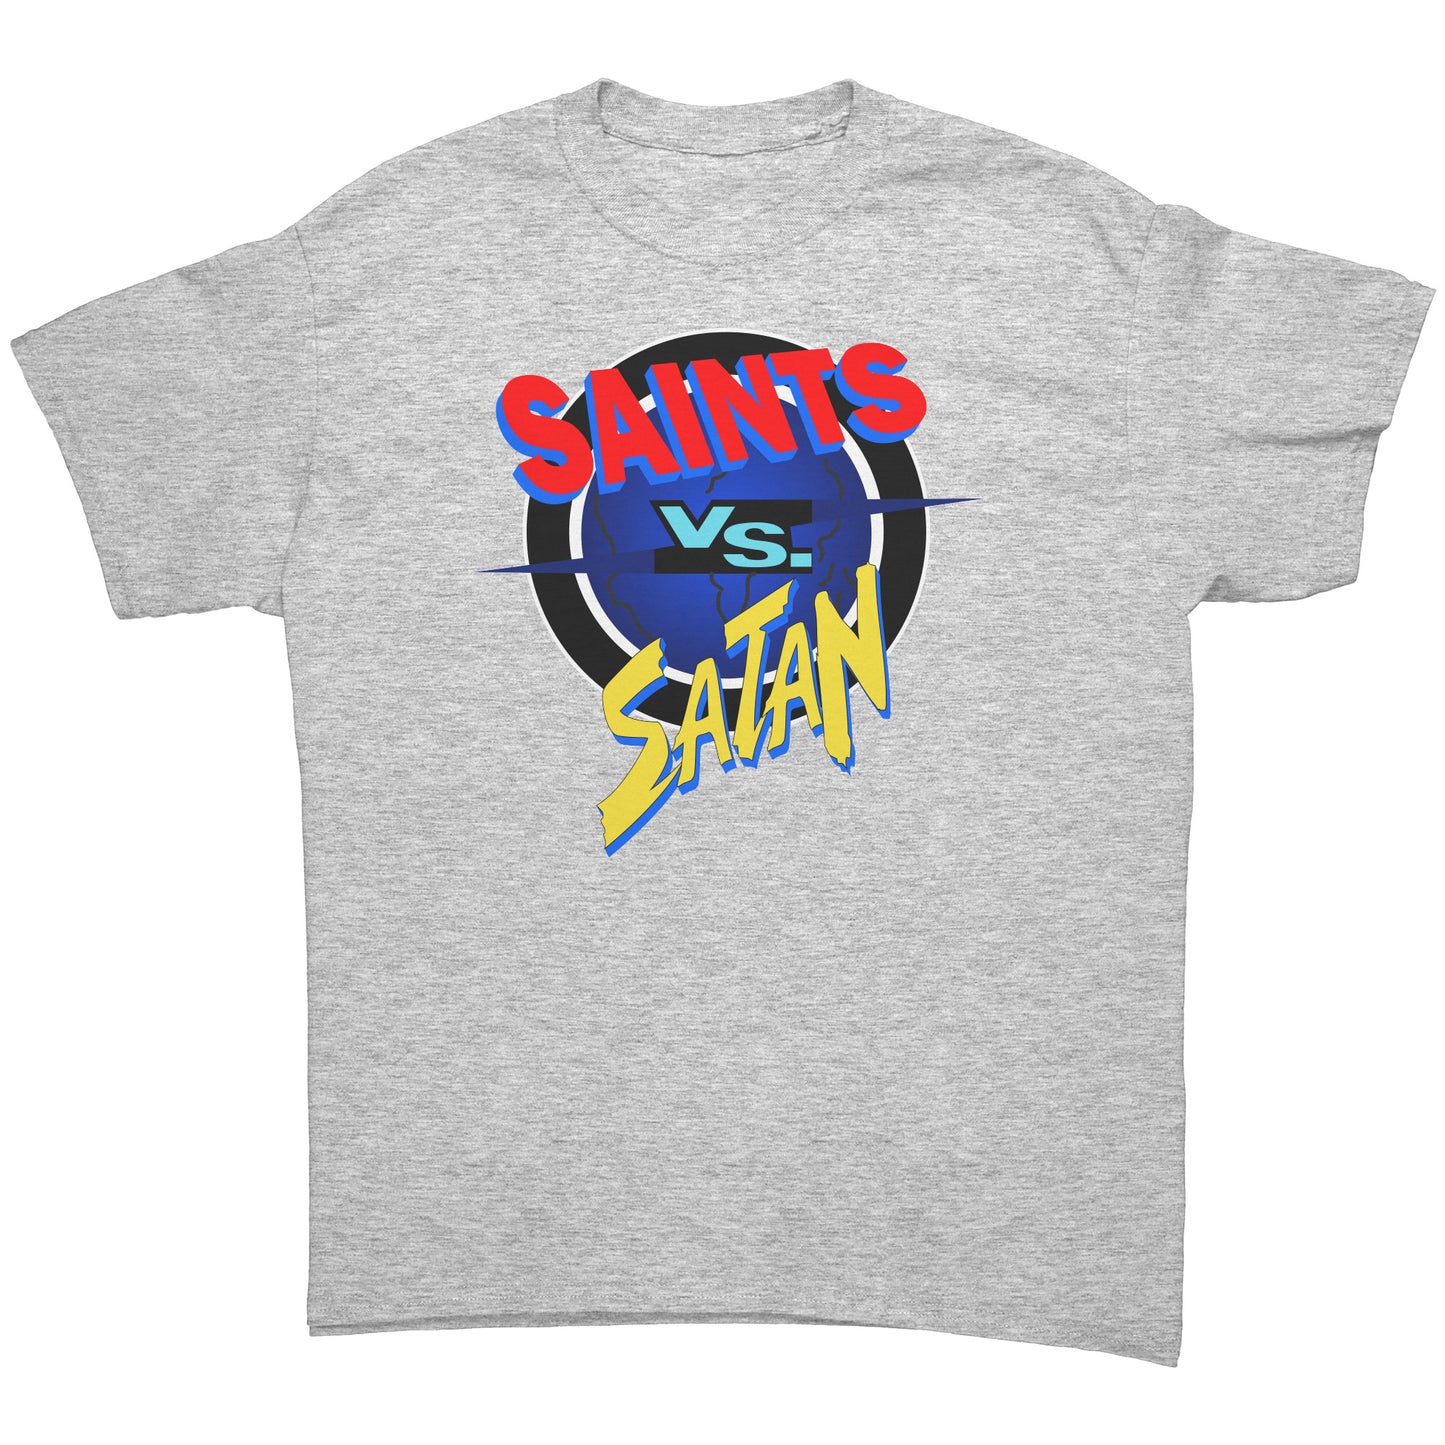 Saints vs Satan Men's T-Shirt